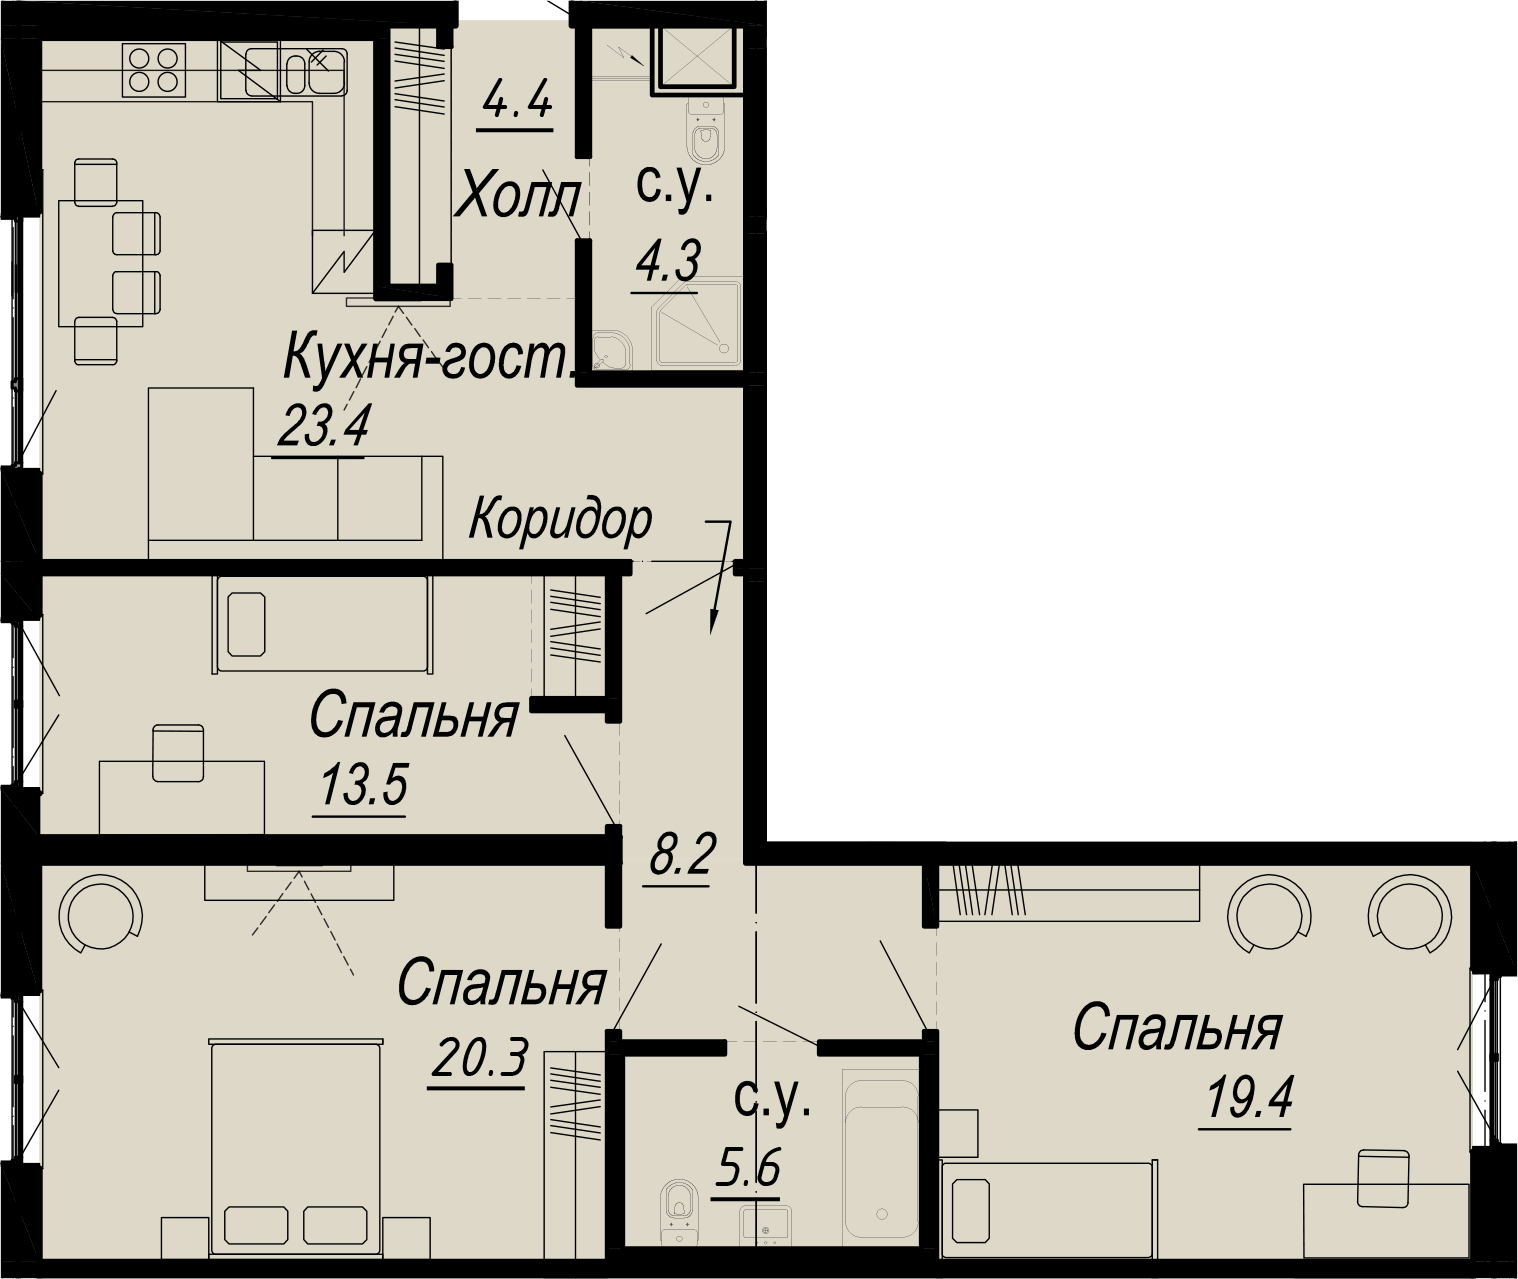 3-комнатная квартира  №10-3 в Meltzer Hall: 99.1 м², этаж 3 - купить в Санкт-Петербурге